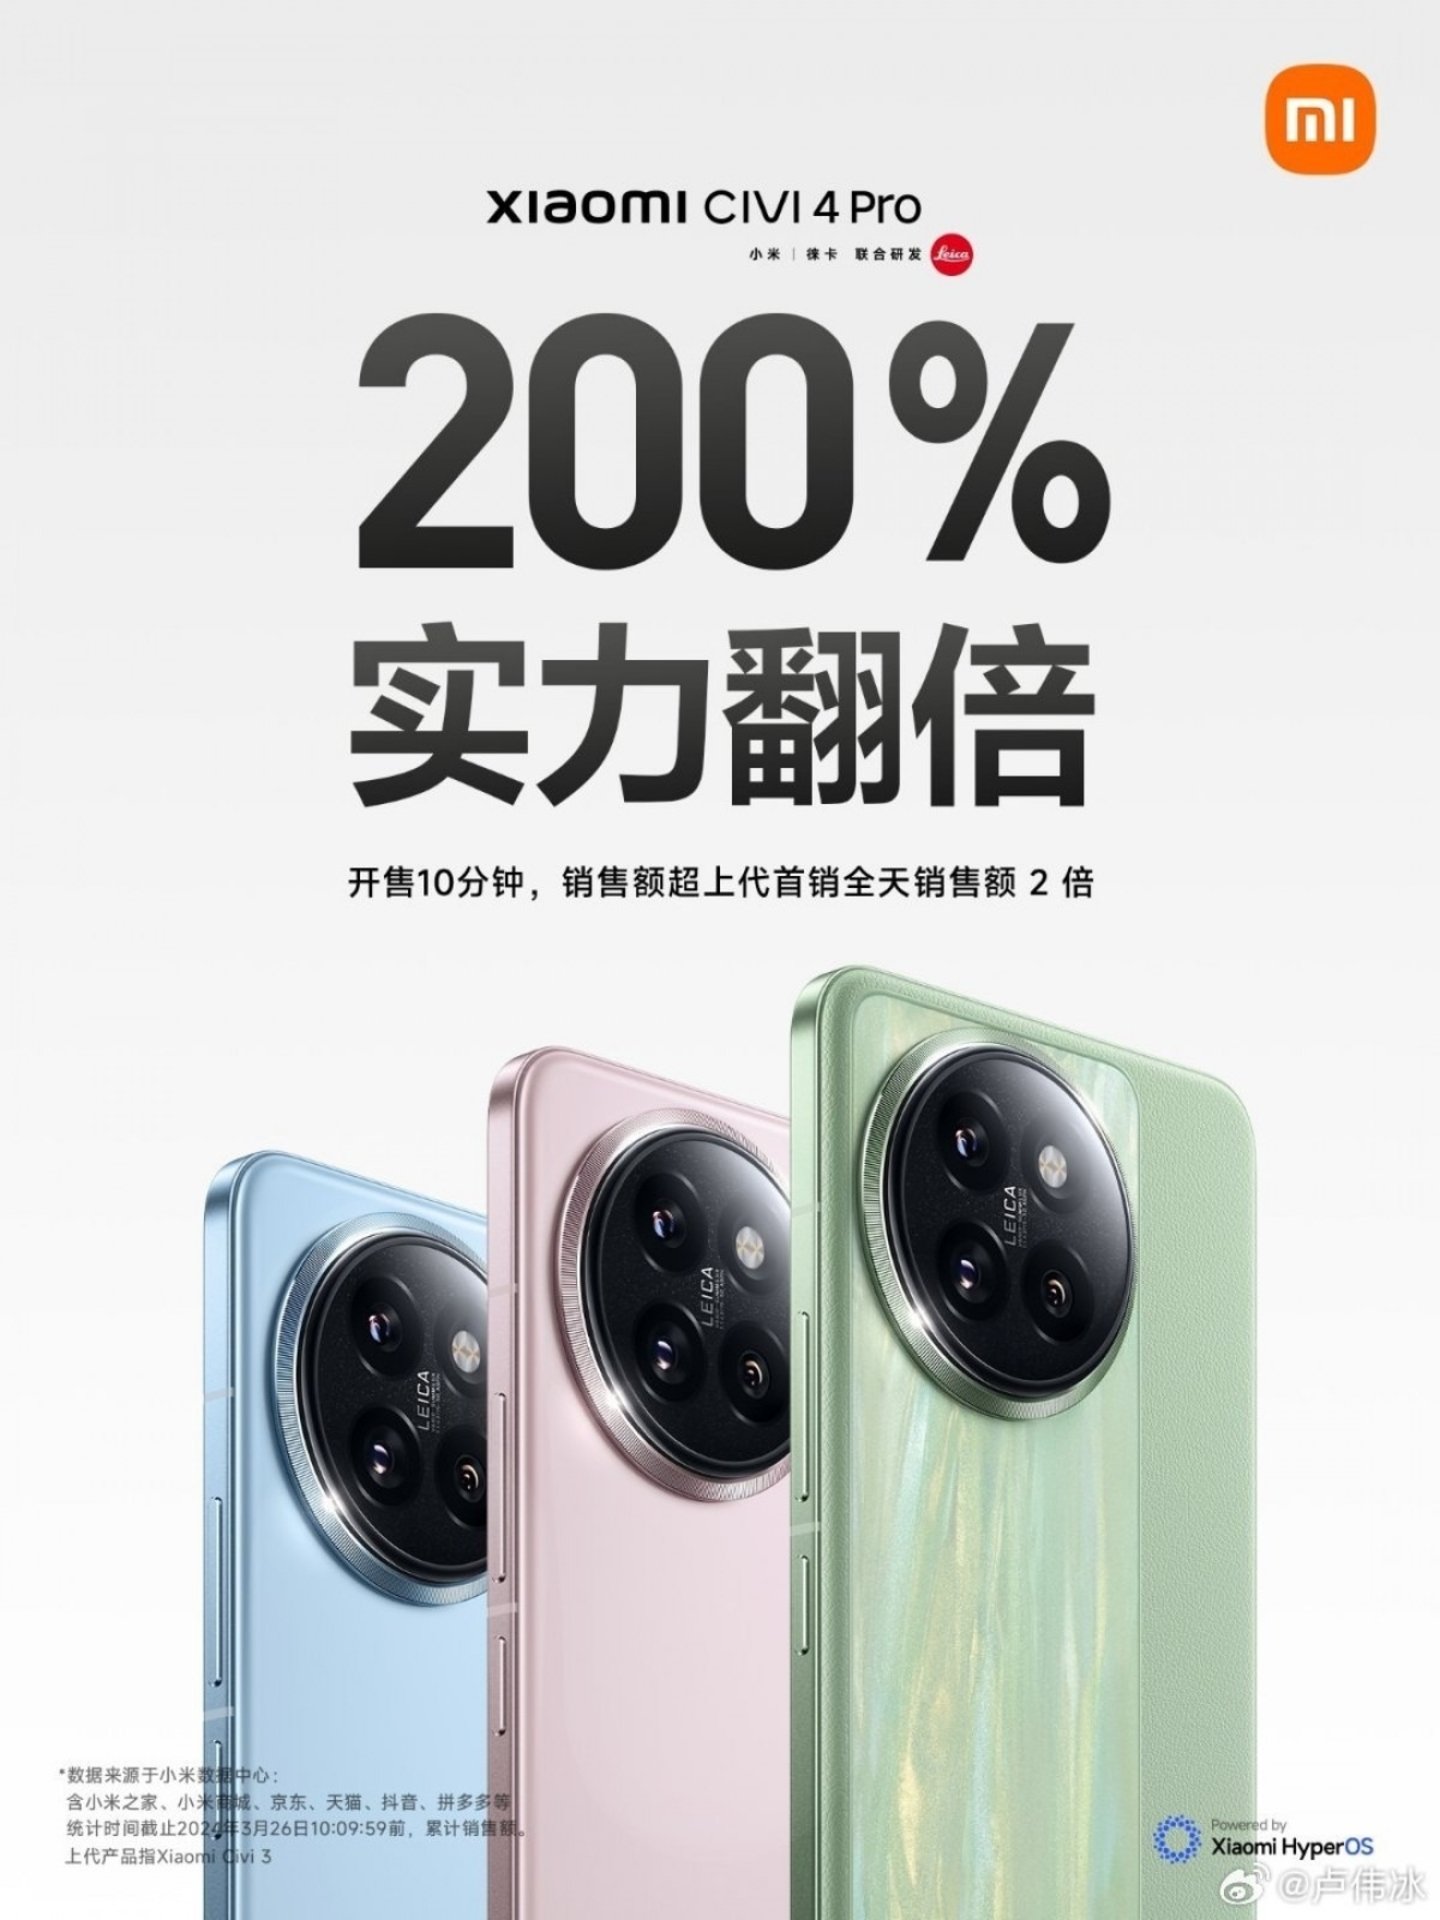 Este nuevo gama alta económico de Xiaomi solo ha necesitado 10 minutos para batir un récord de ventas